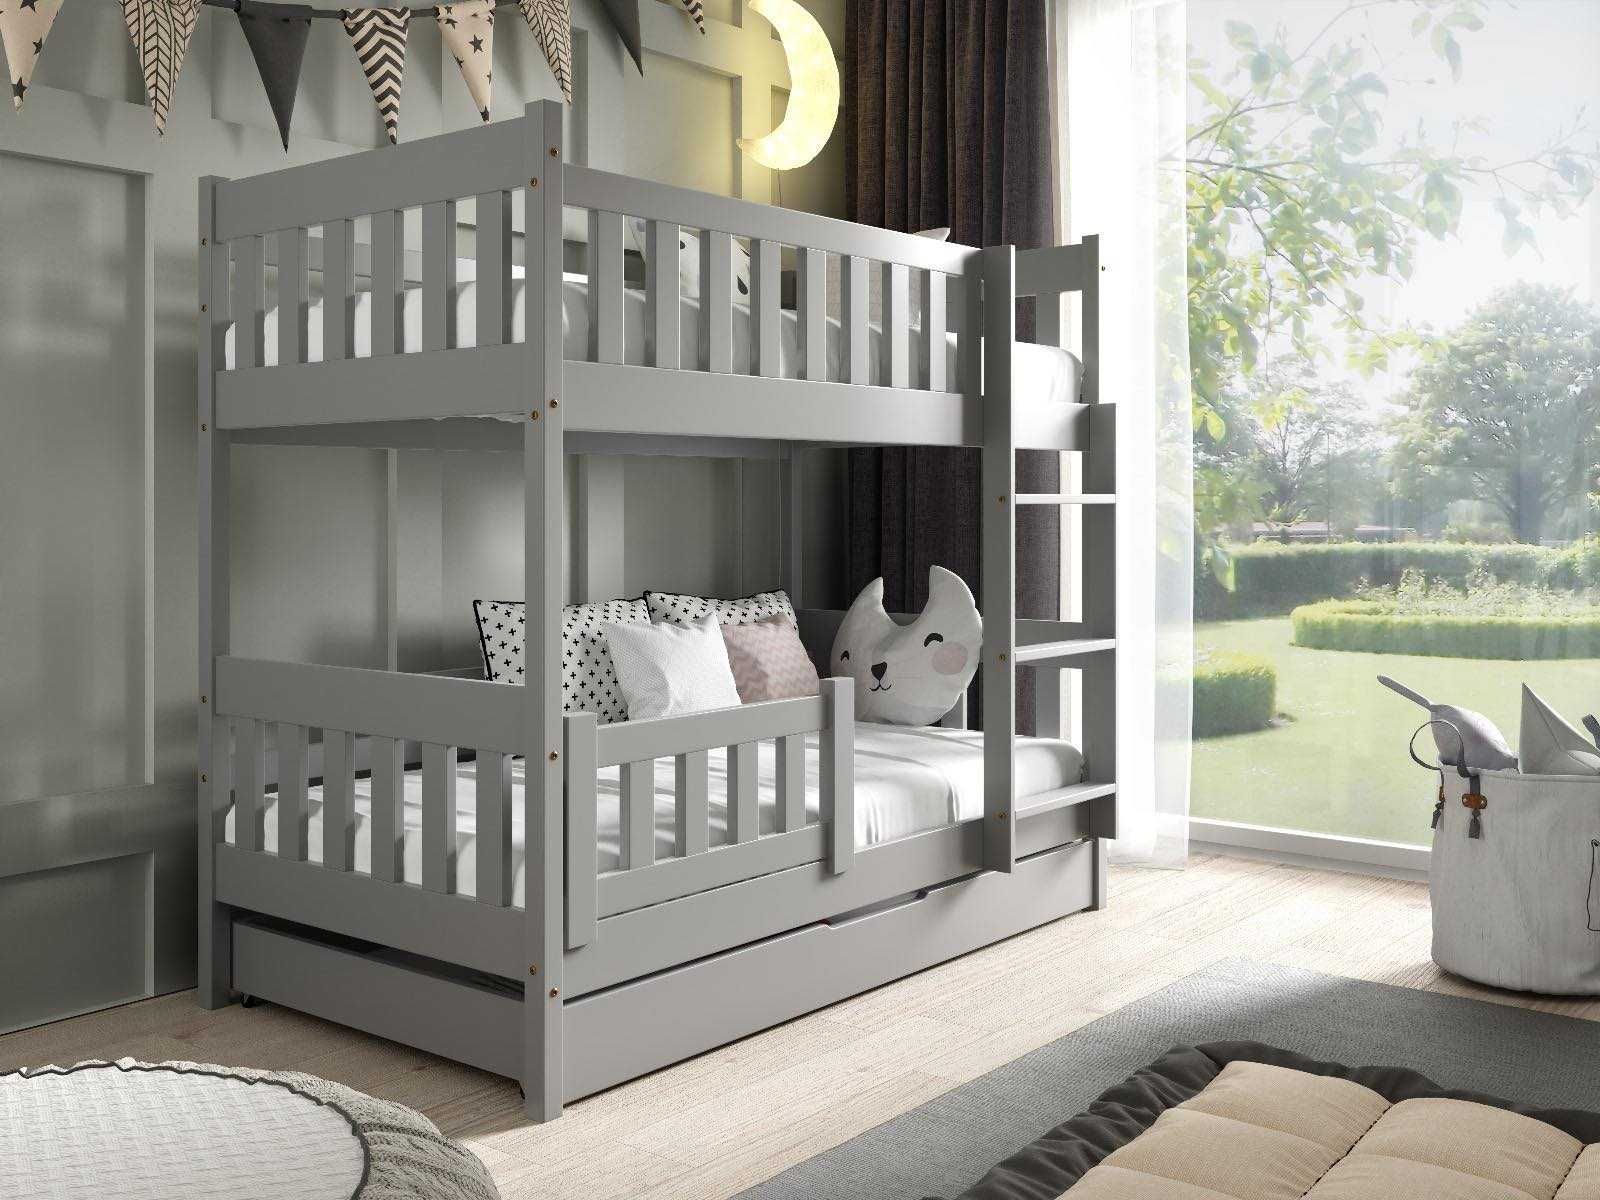 Łóżko dla 2 dzieci sosnowe piętrowe LILA 160x80 - materace GRATIS